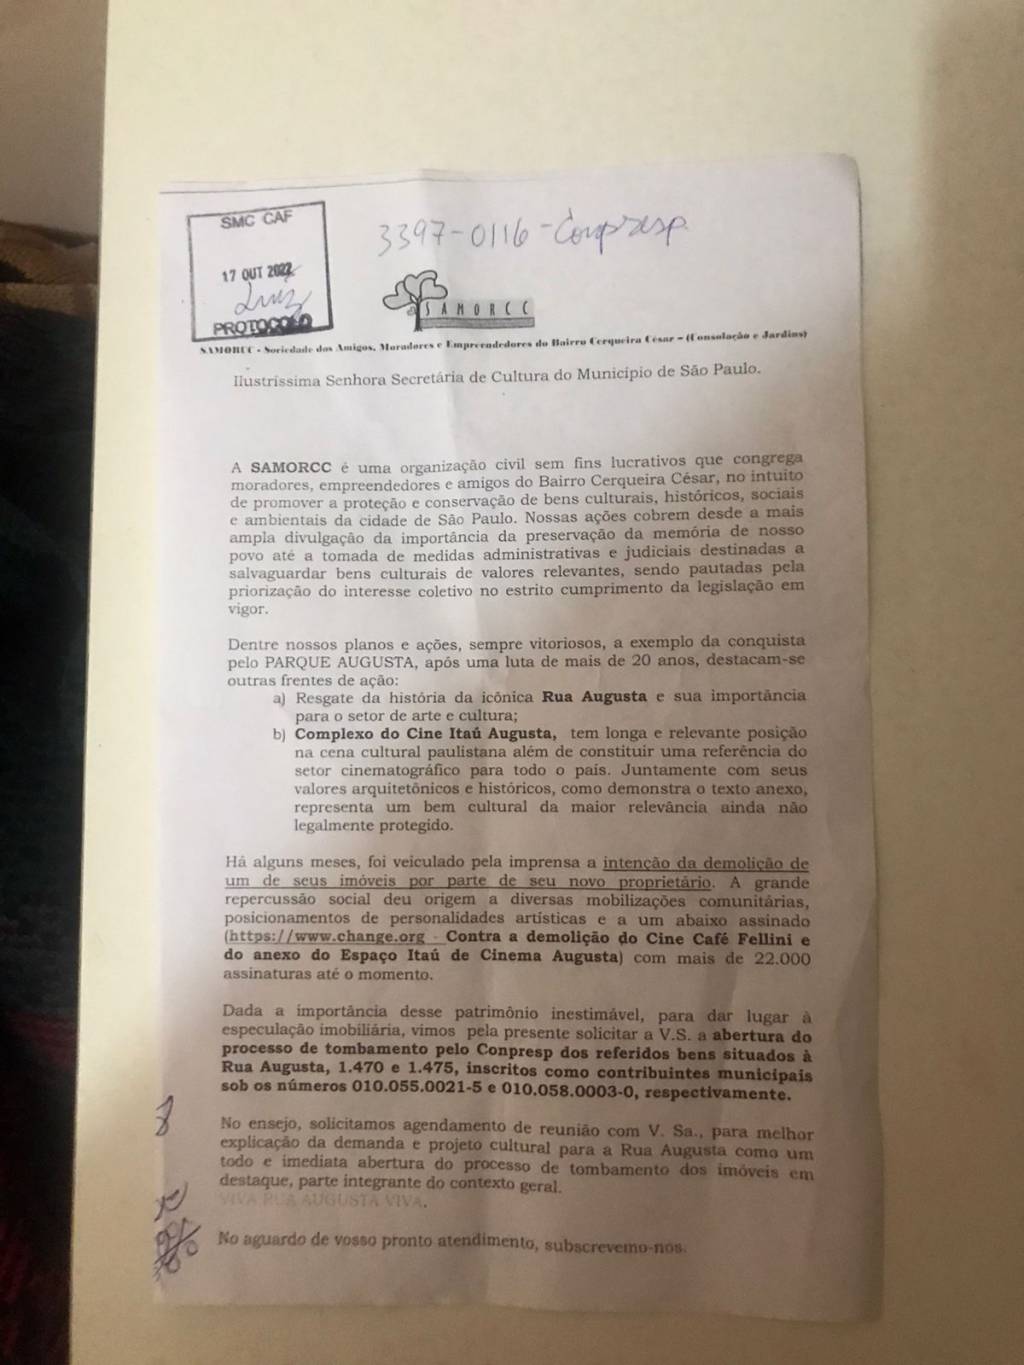 Ofício enviado pela Samorcc no dia 17 de outubro de 2022 e não respondido pela Prefeitura de São Paulo até o protocolo da ação na Justiça